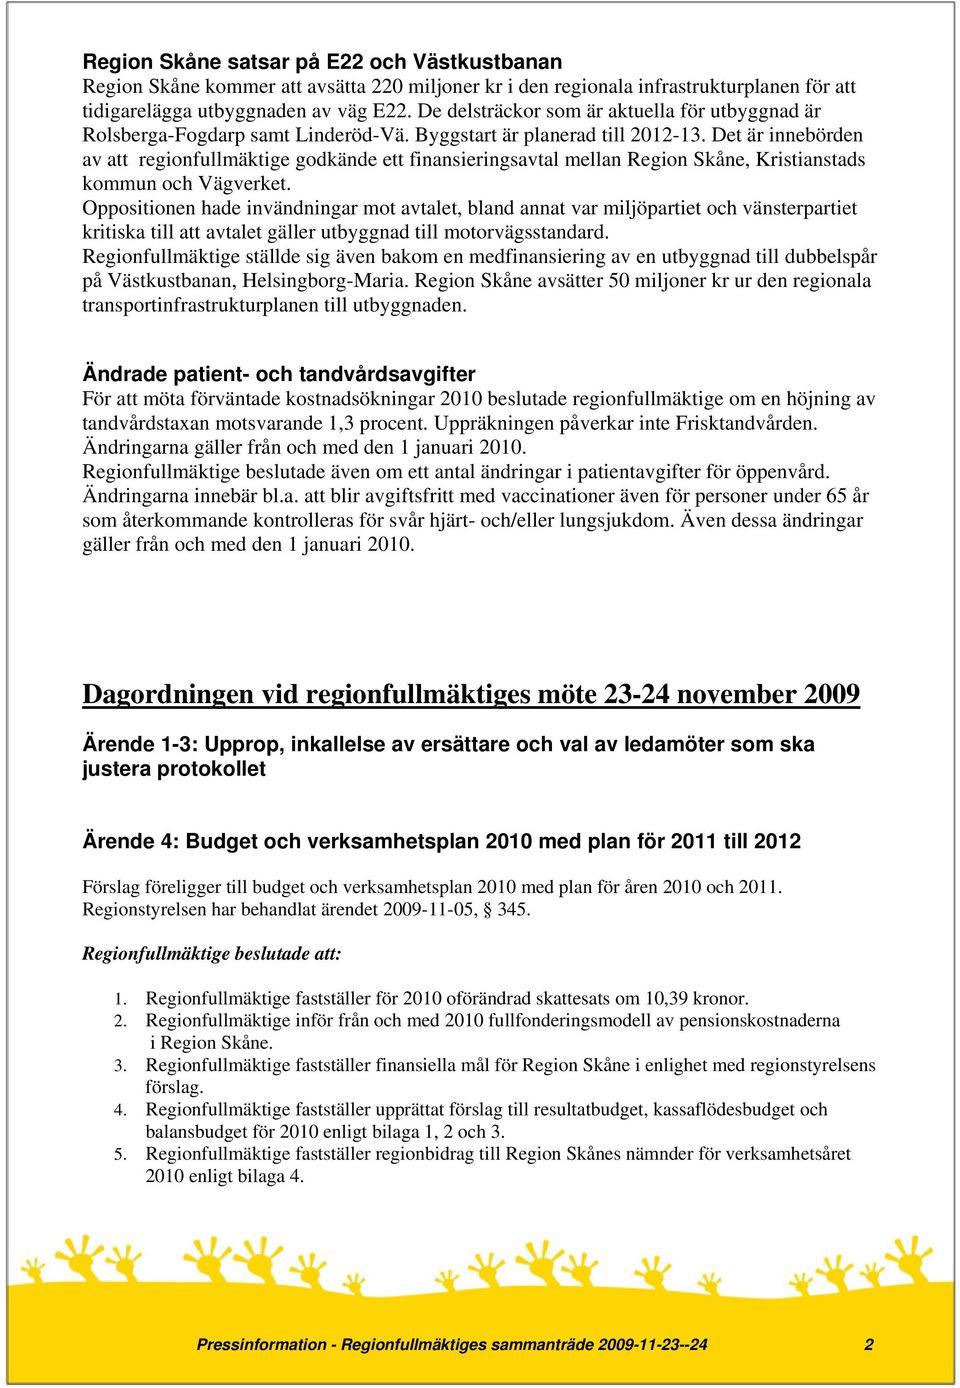 Det är innebörden av att regionfullmäktige godkände ett finansieringsavtal mellan Region Skåne, Kristianstads kommun och Vägverket.